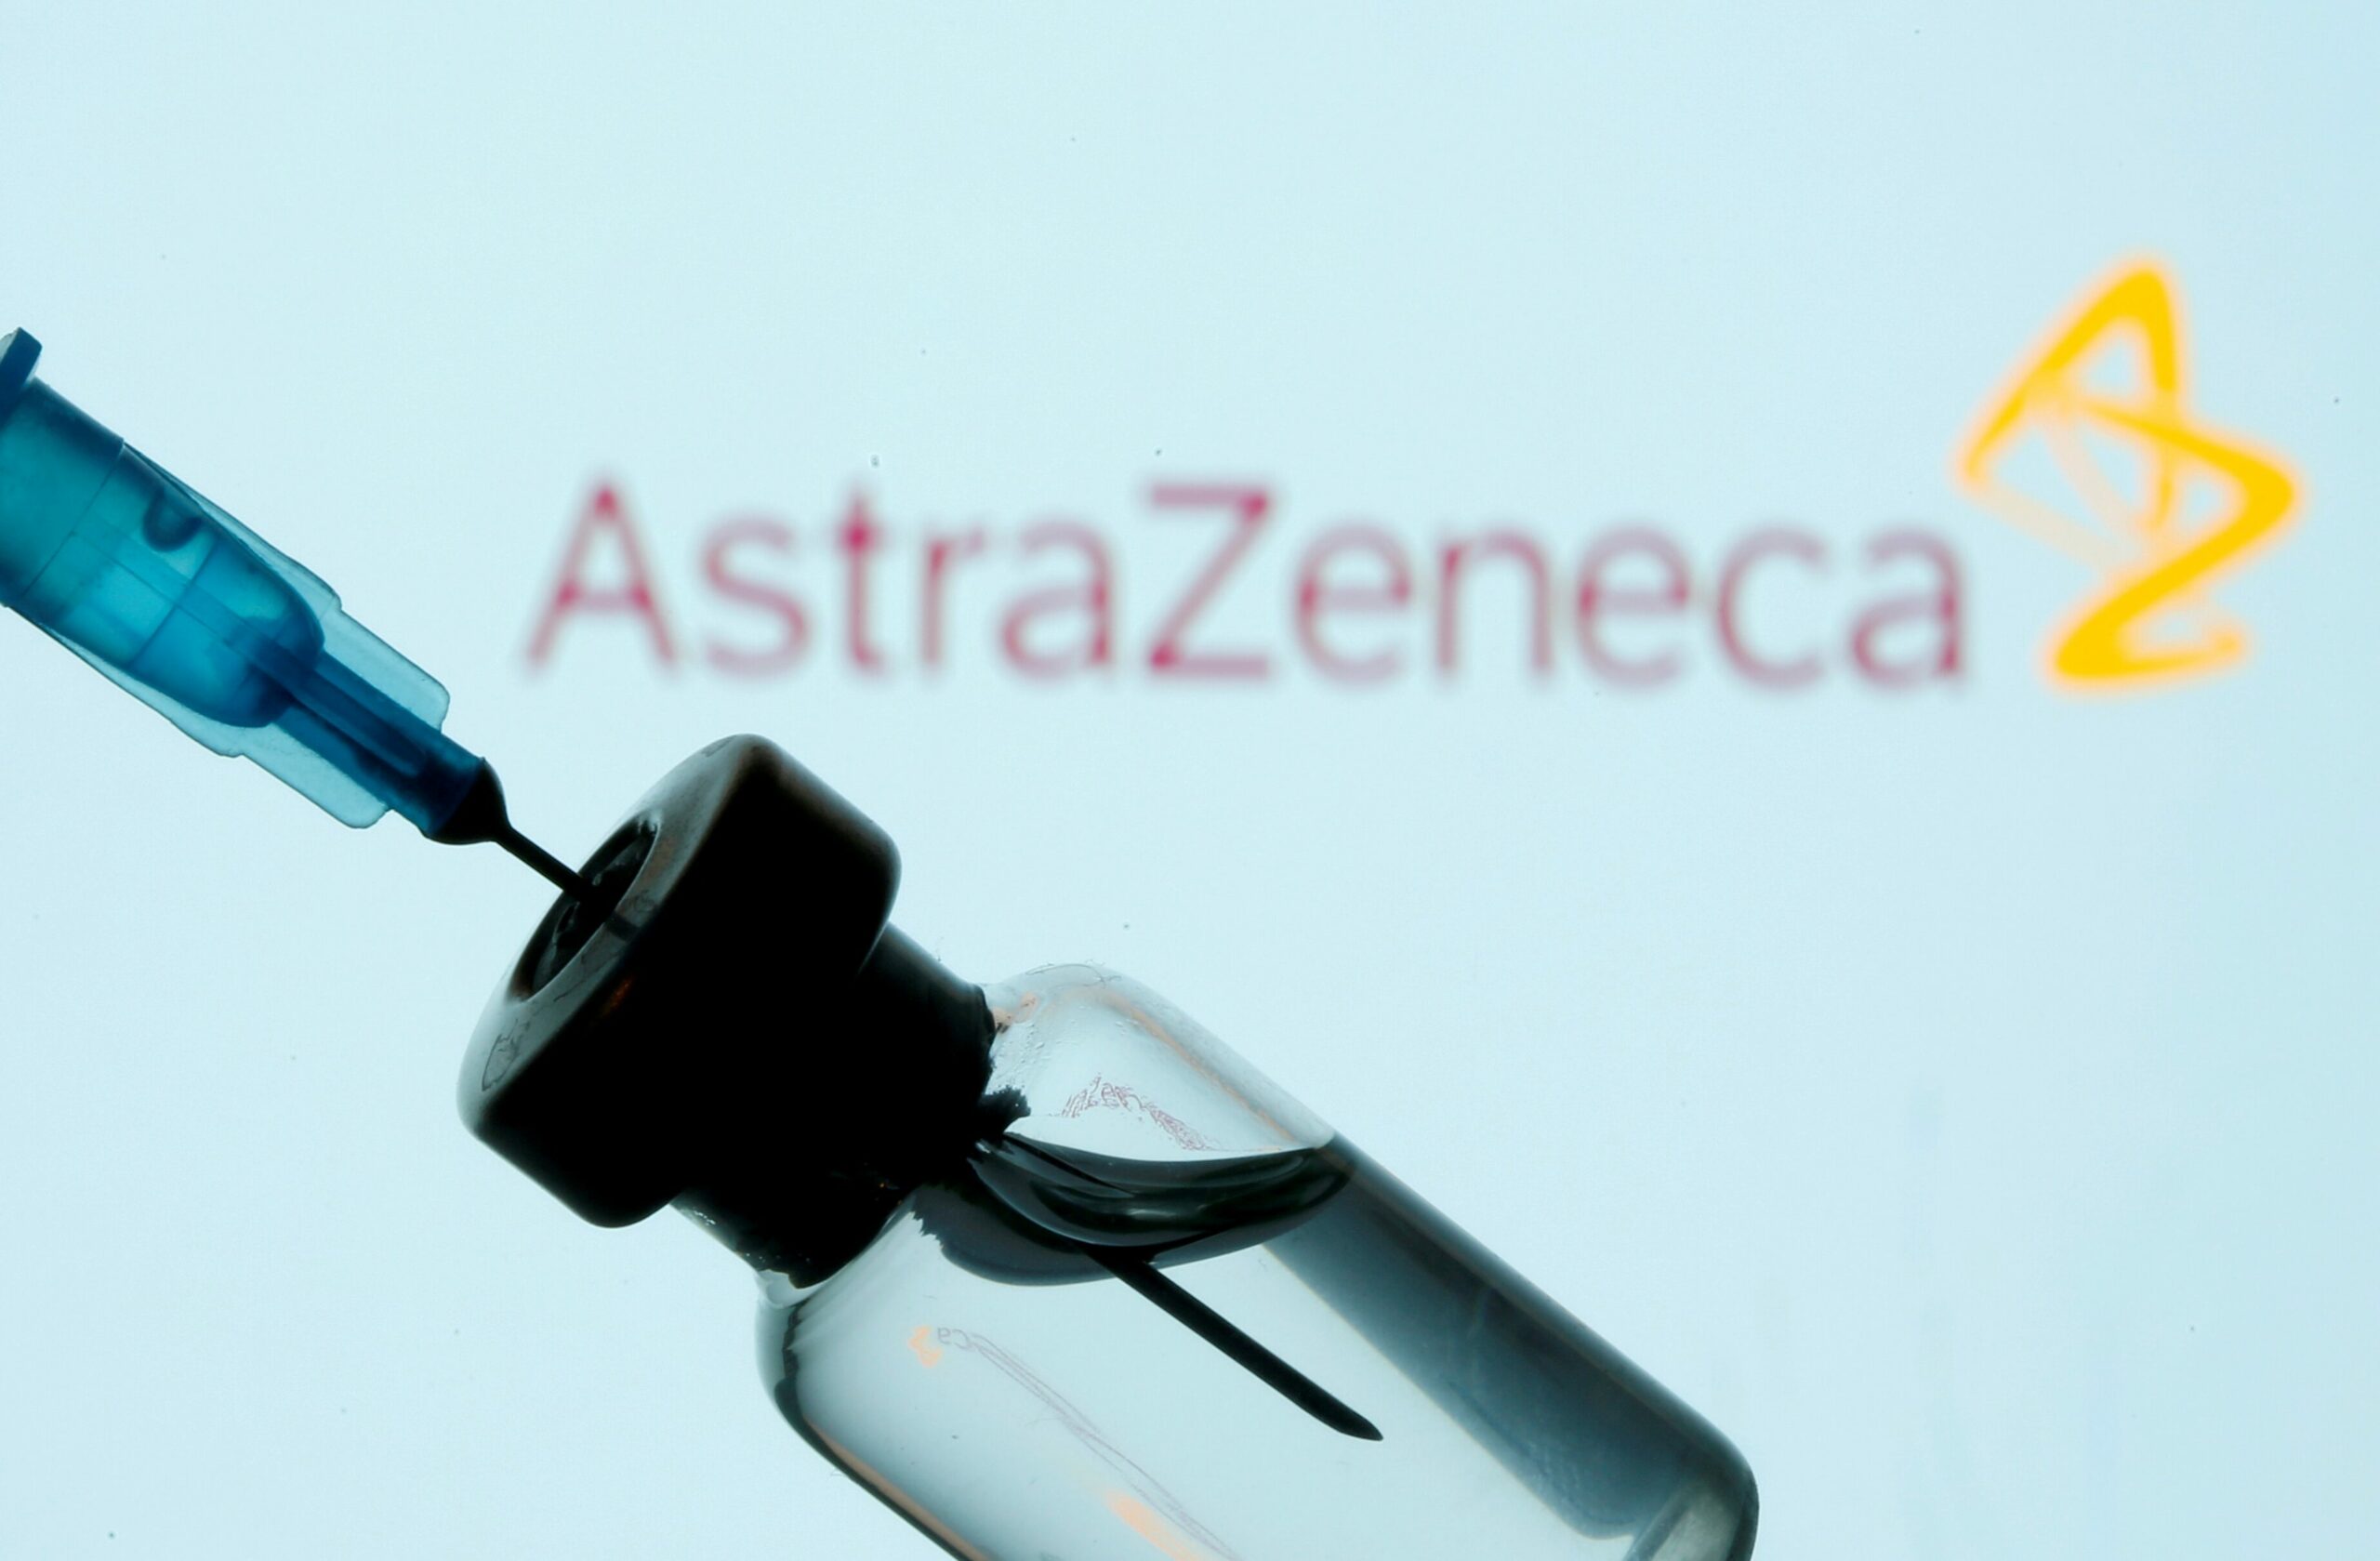 อียูขู่เข้มส่งออกวัคซีน หลัง ‘แอสทราเซเนกา’ จัดส่งล่าช้า